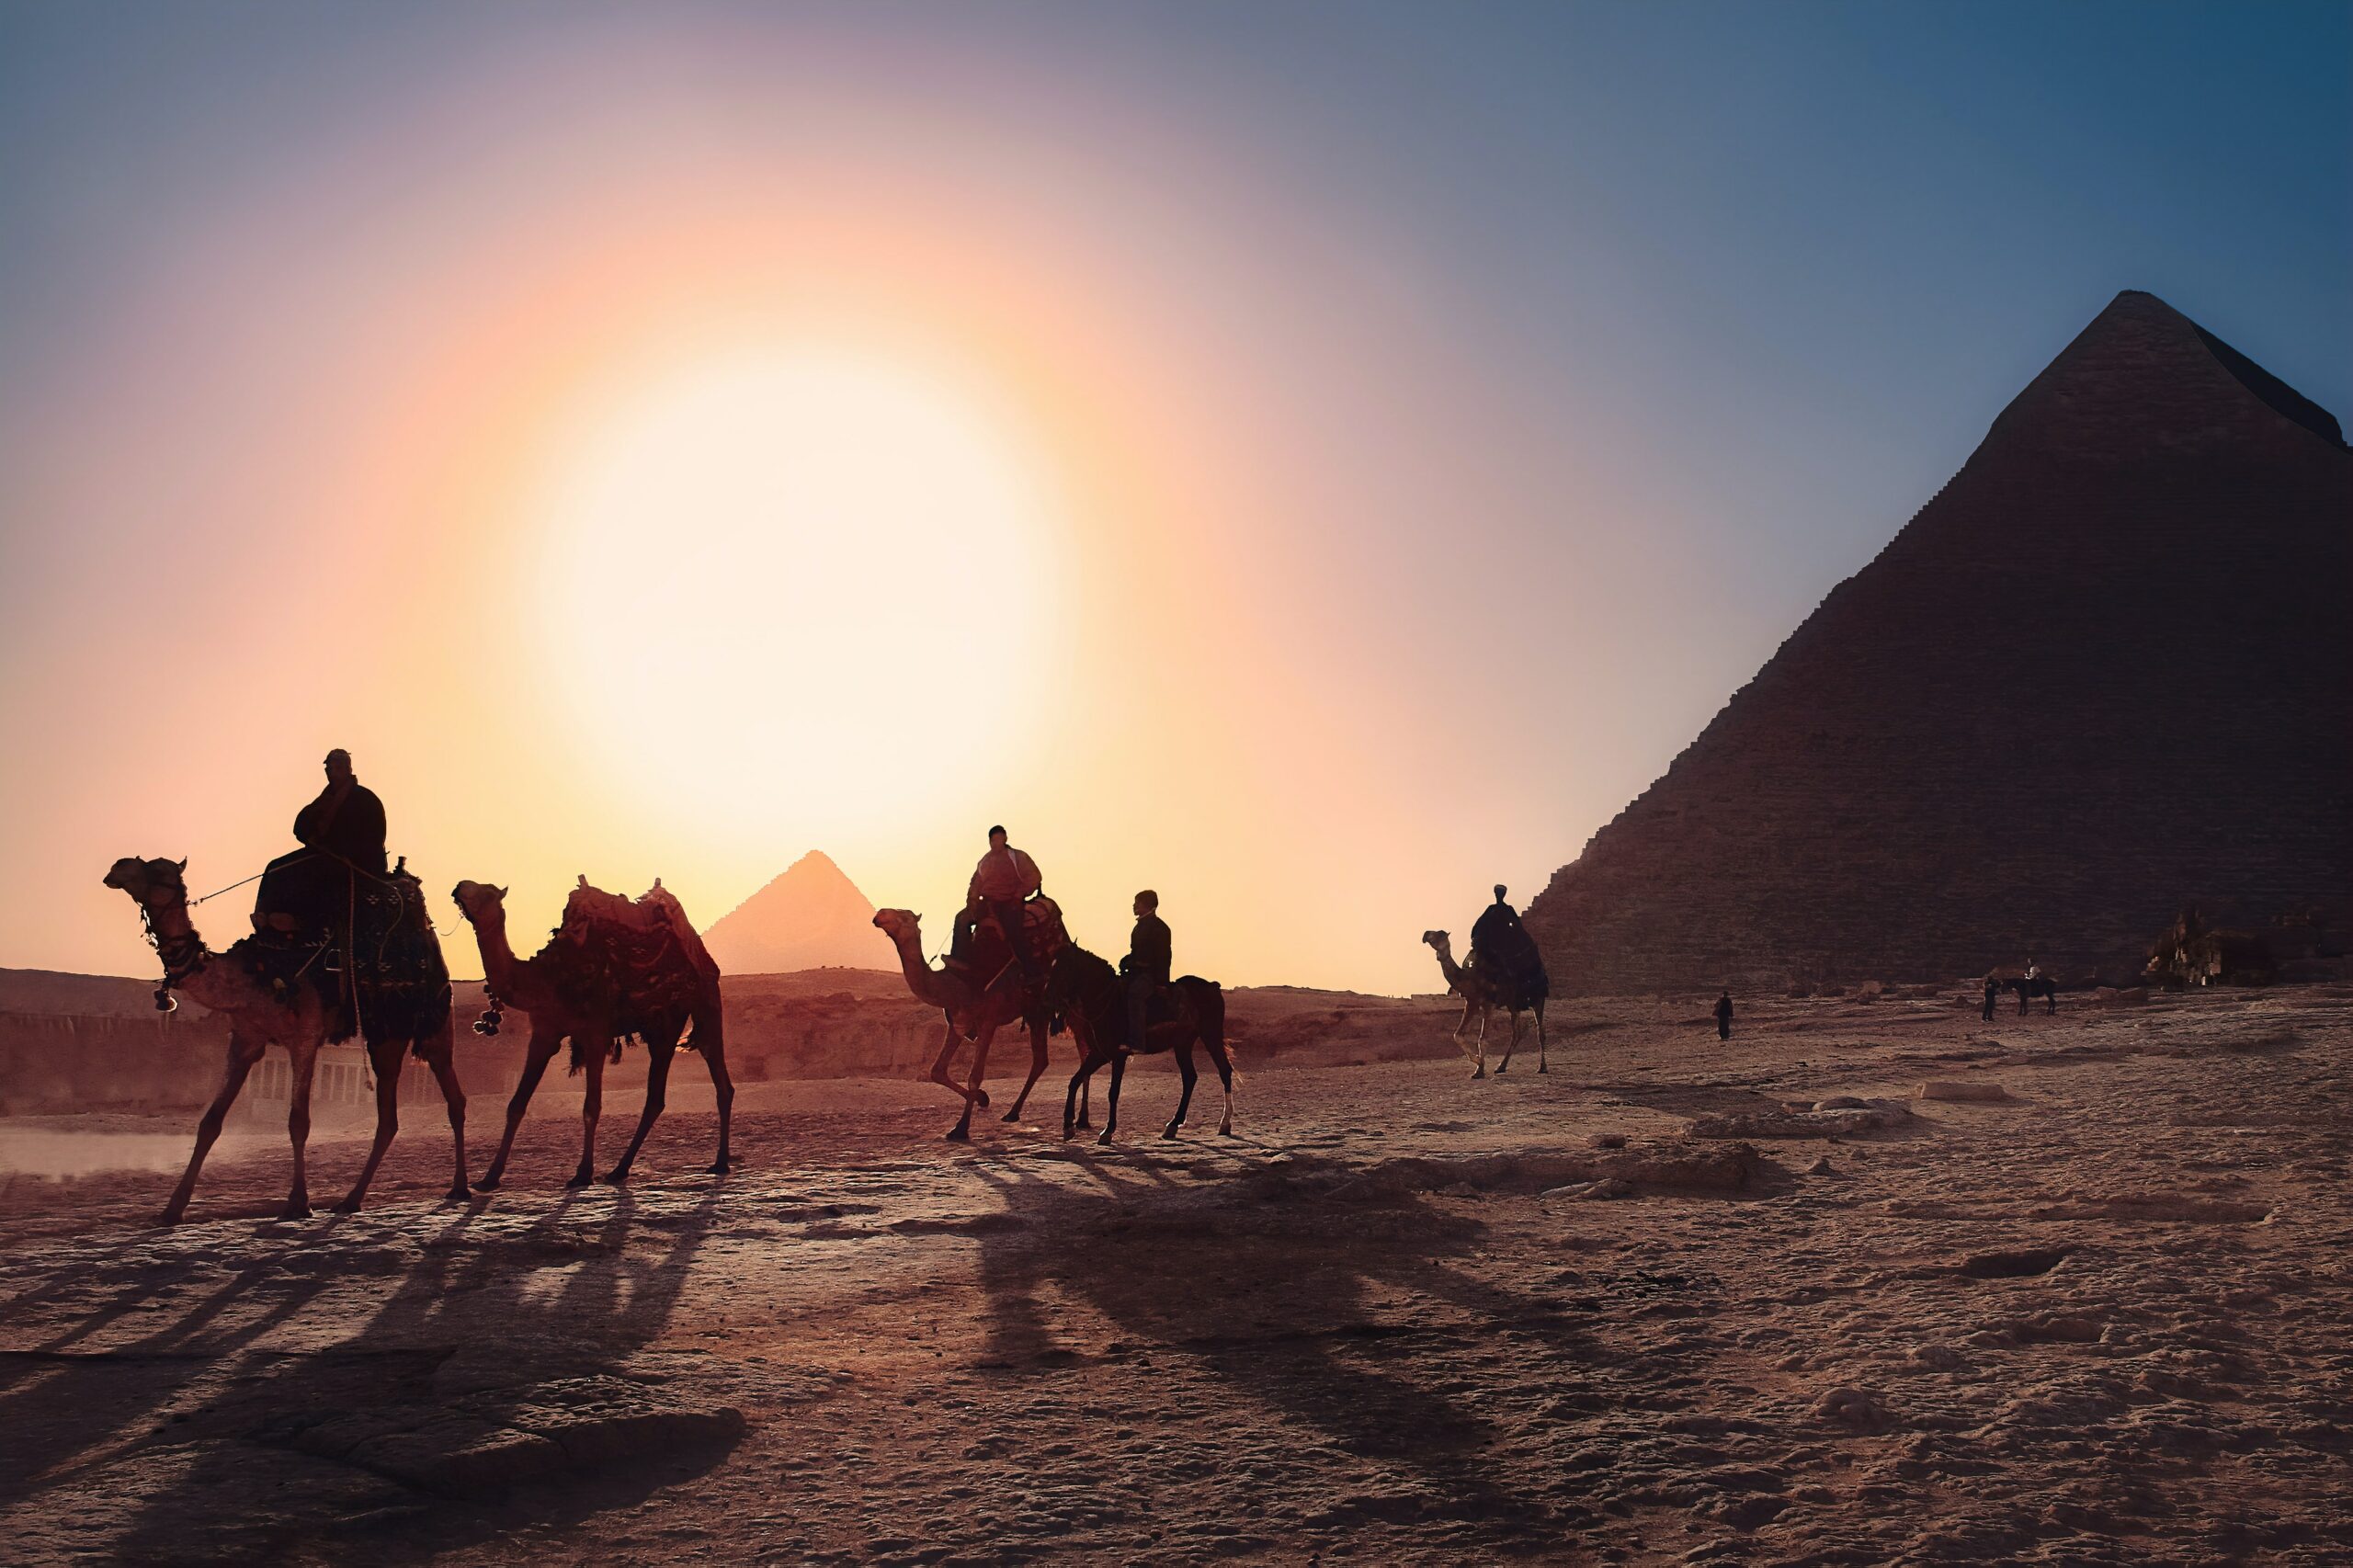 Al Ahram, Província de Gize, Egito durante o final do dia com homens andando de camelo e ao fundo a pirâmide.